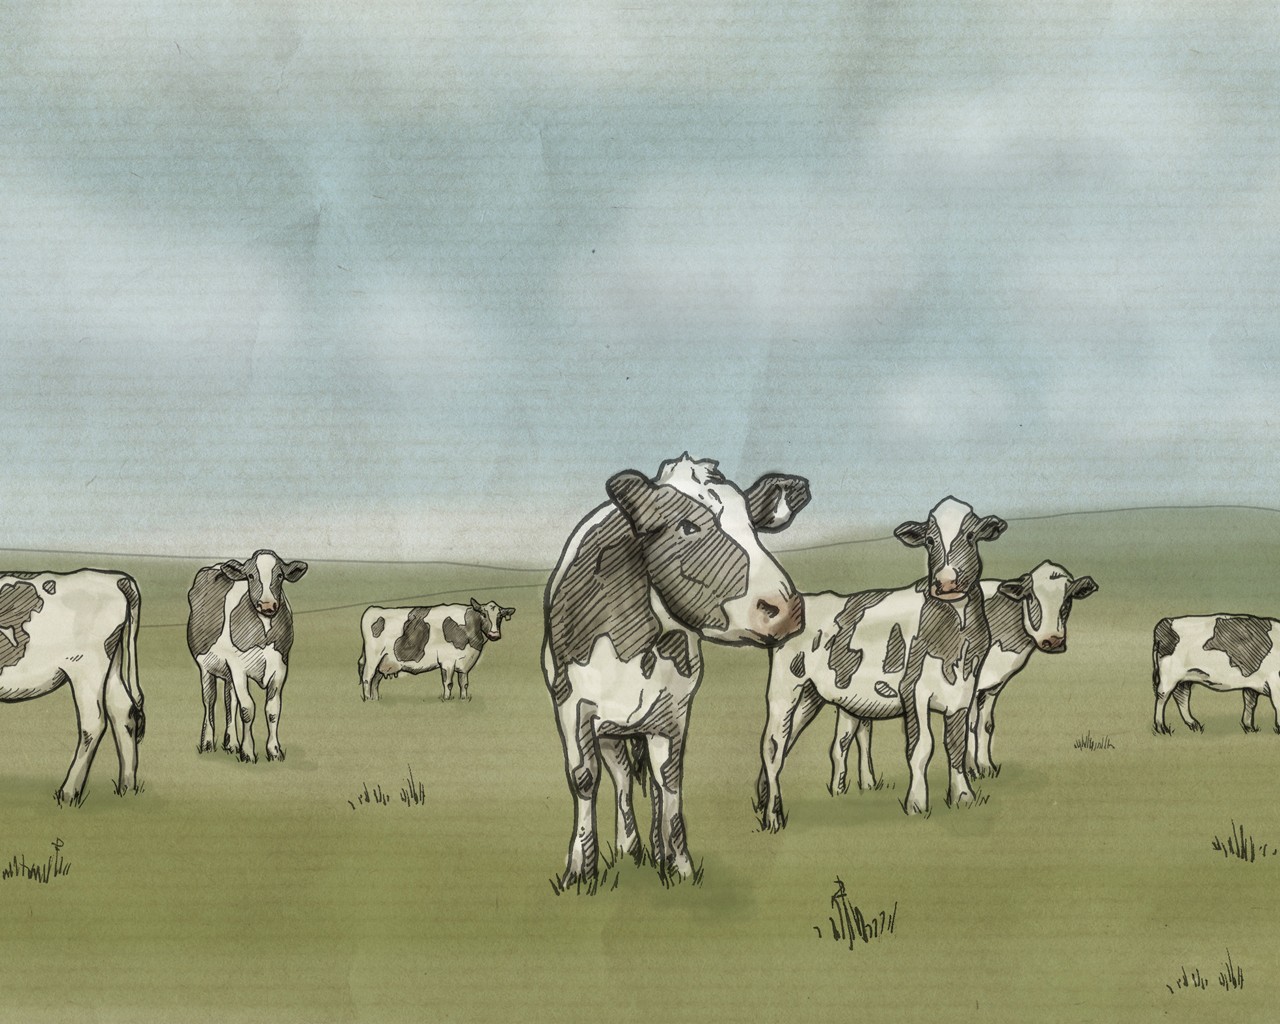 General 1280x1024 cow animals mammals field artwork